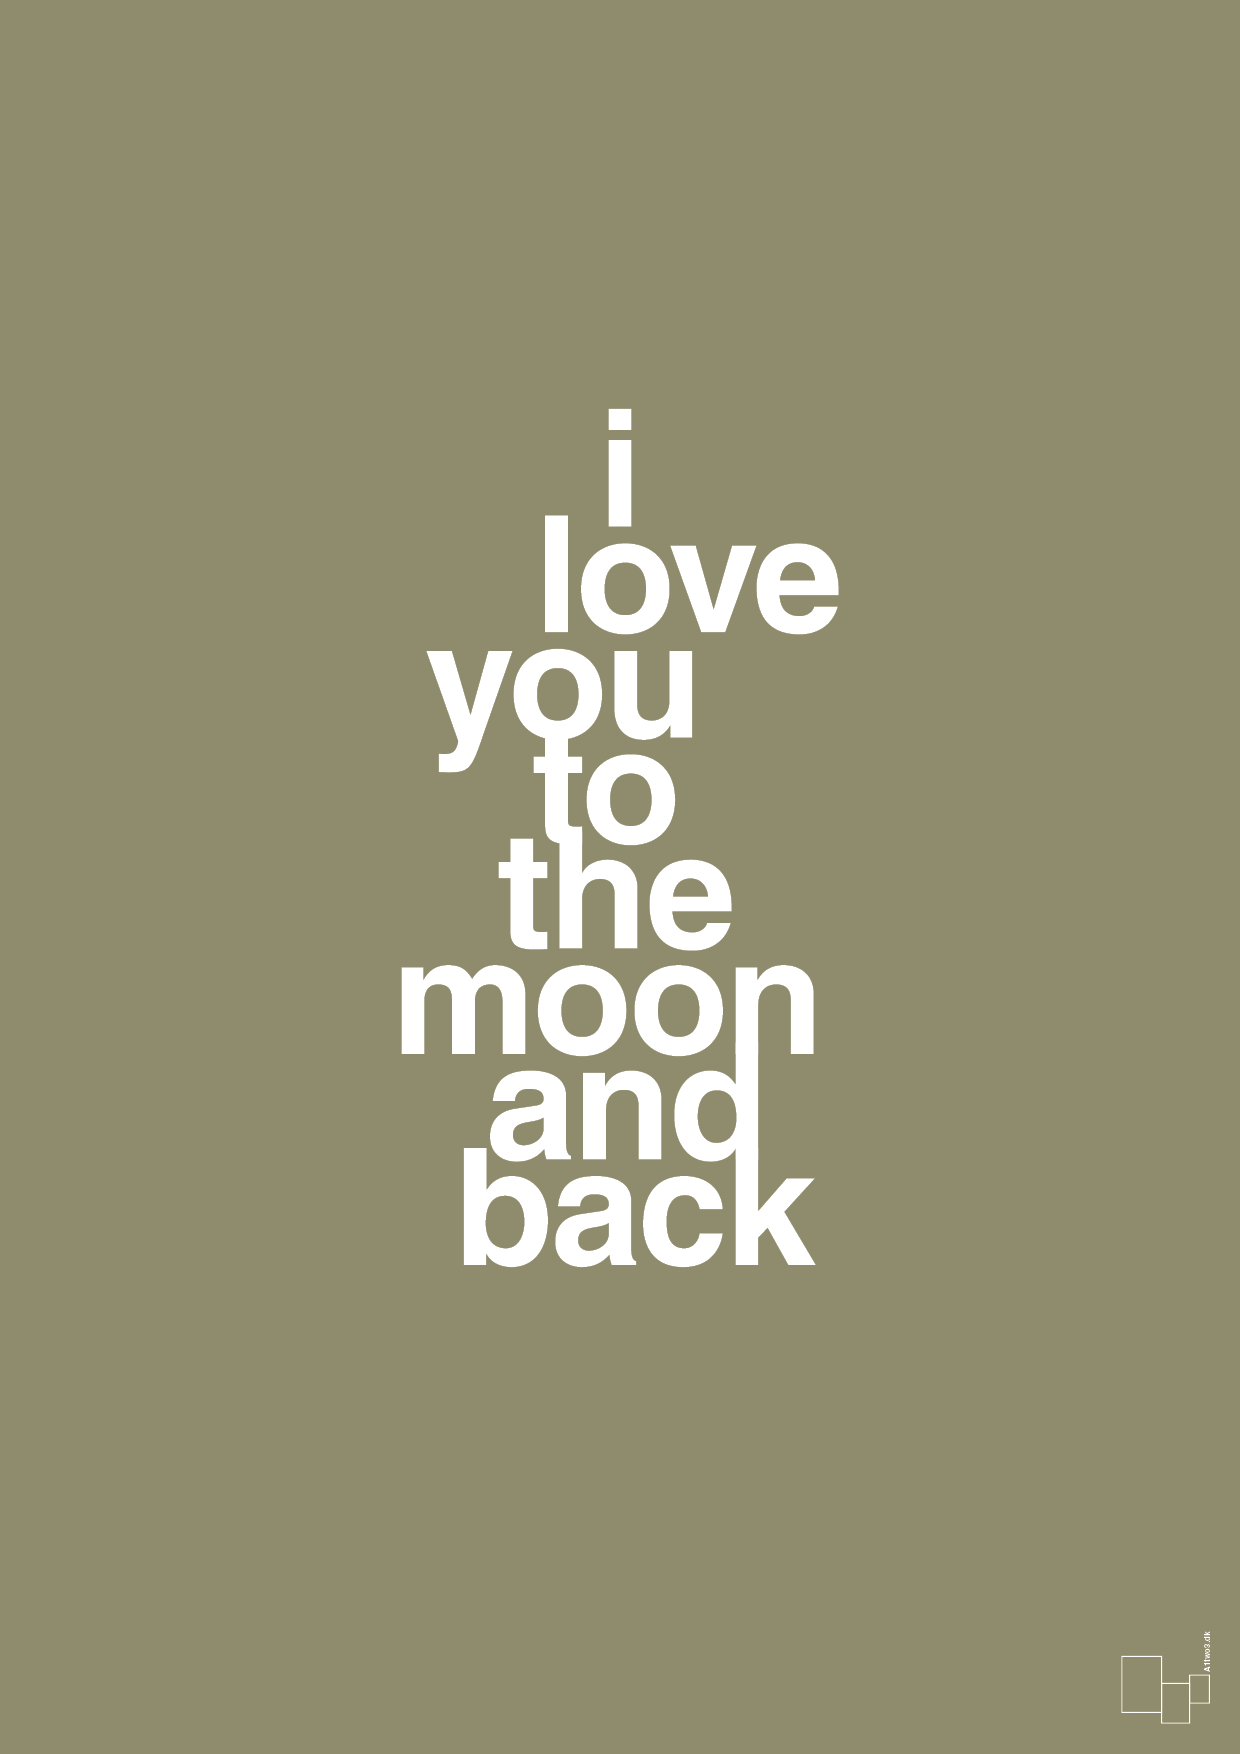 i love you to the moon and back - Plakat med Ordsprog i Misty Forrest